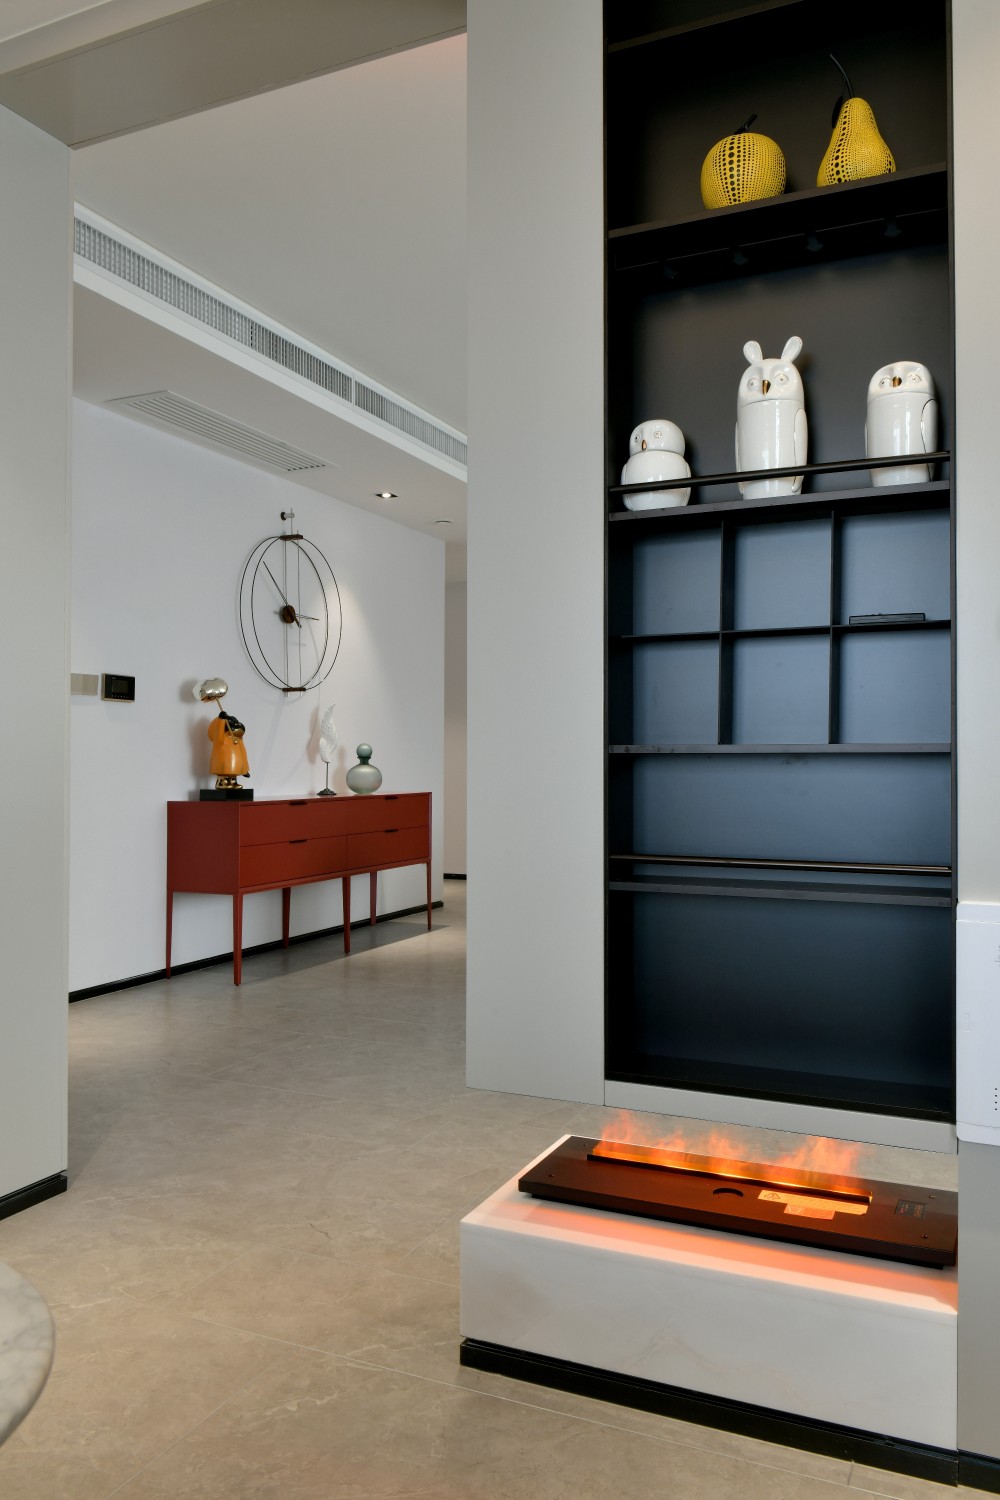 透室居所， 重塑设计的温度和质感 | 诚品设计-19